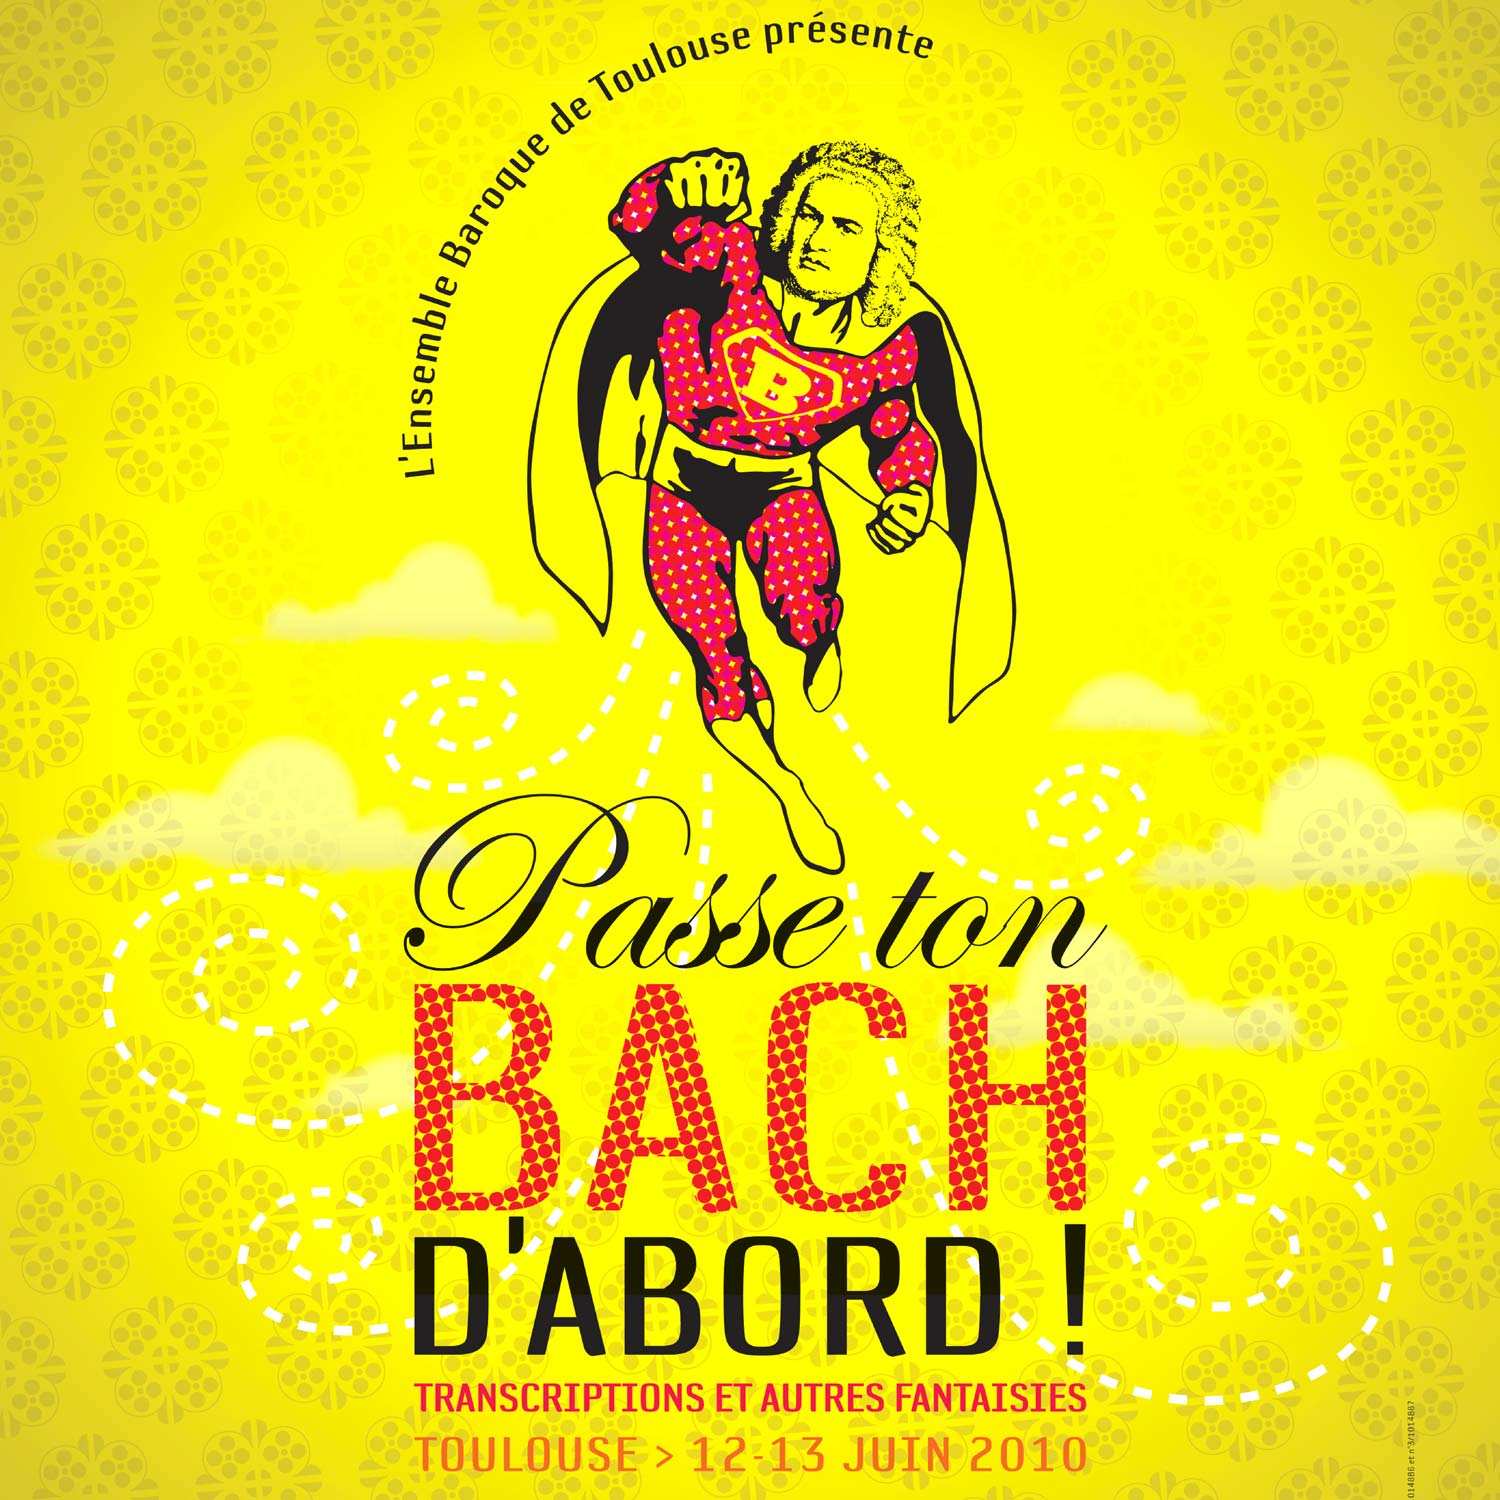 Visuel festival Passe ton Bach d'abord 2010